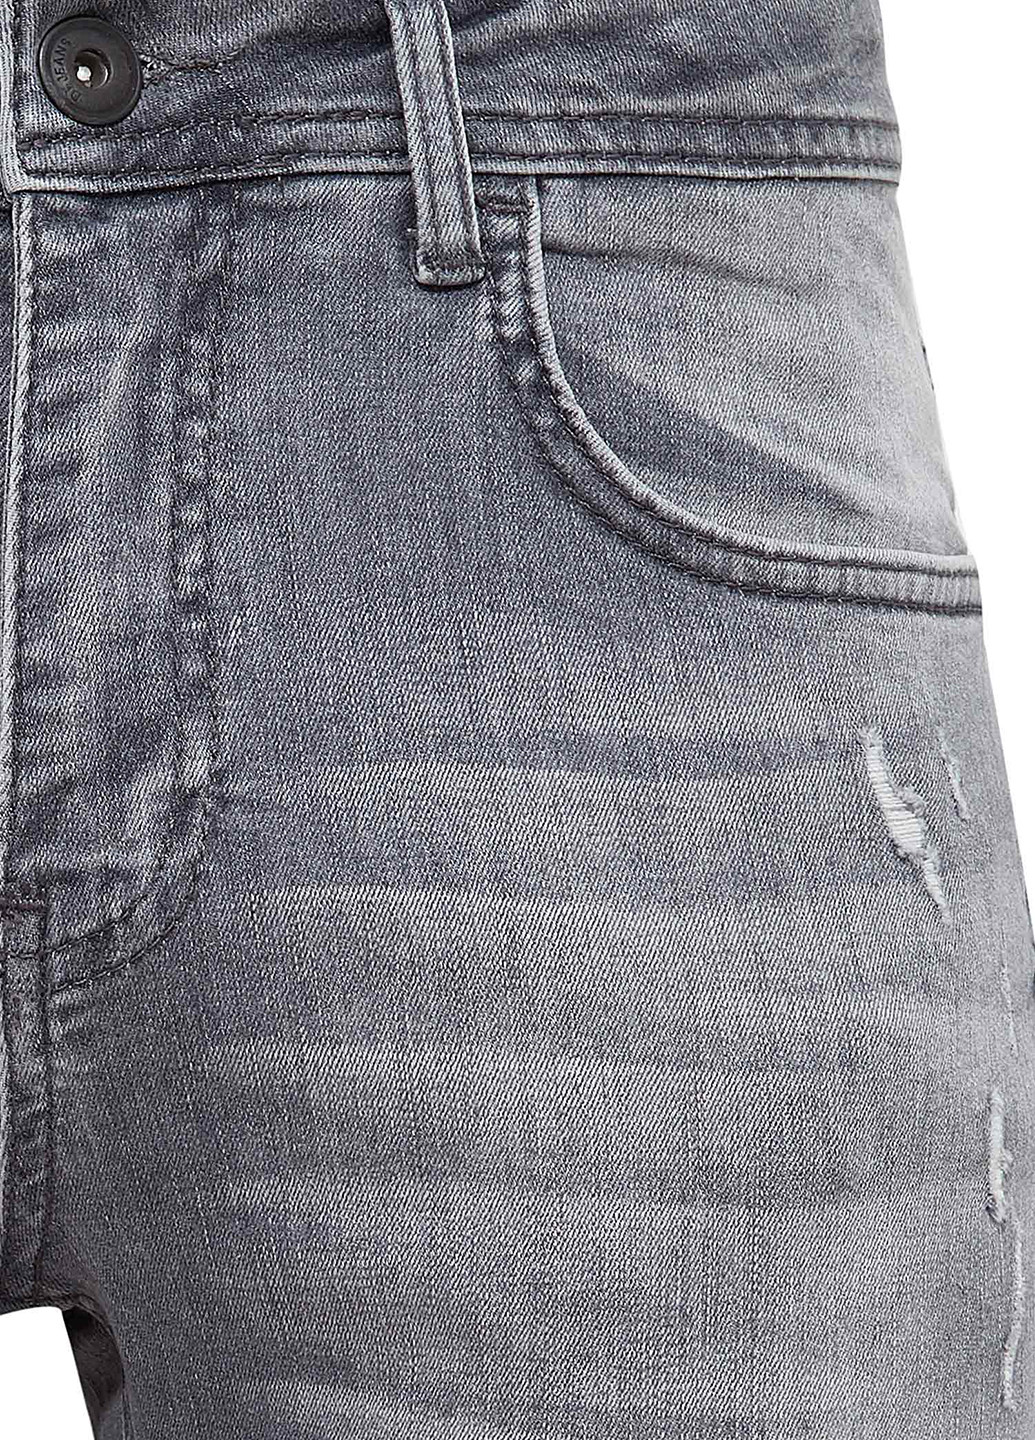 Шорты DeFacto серые джинсовые хлопок